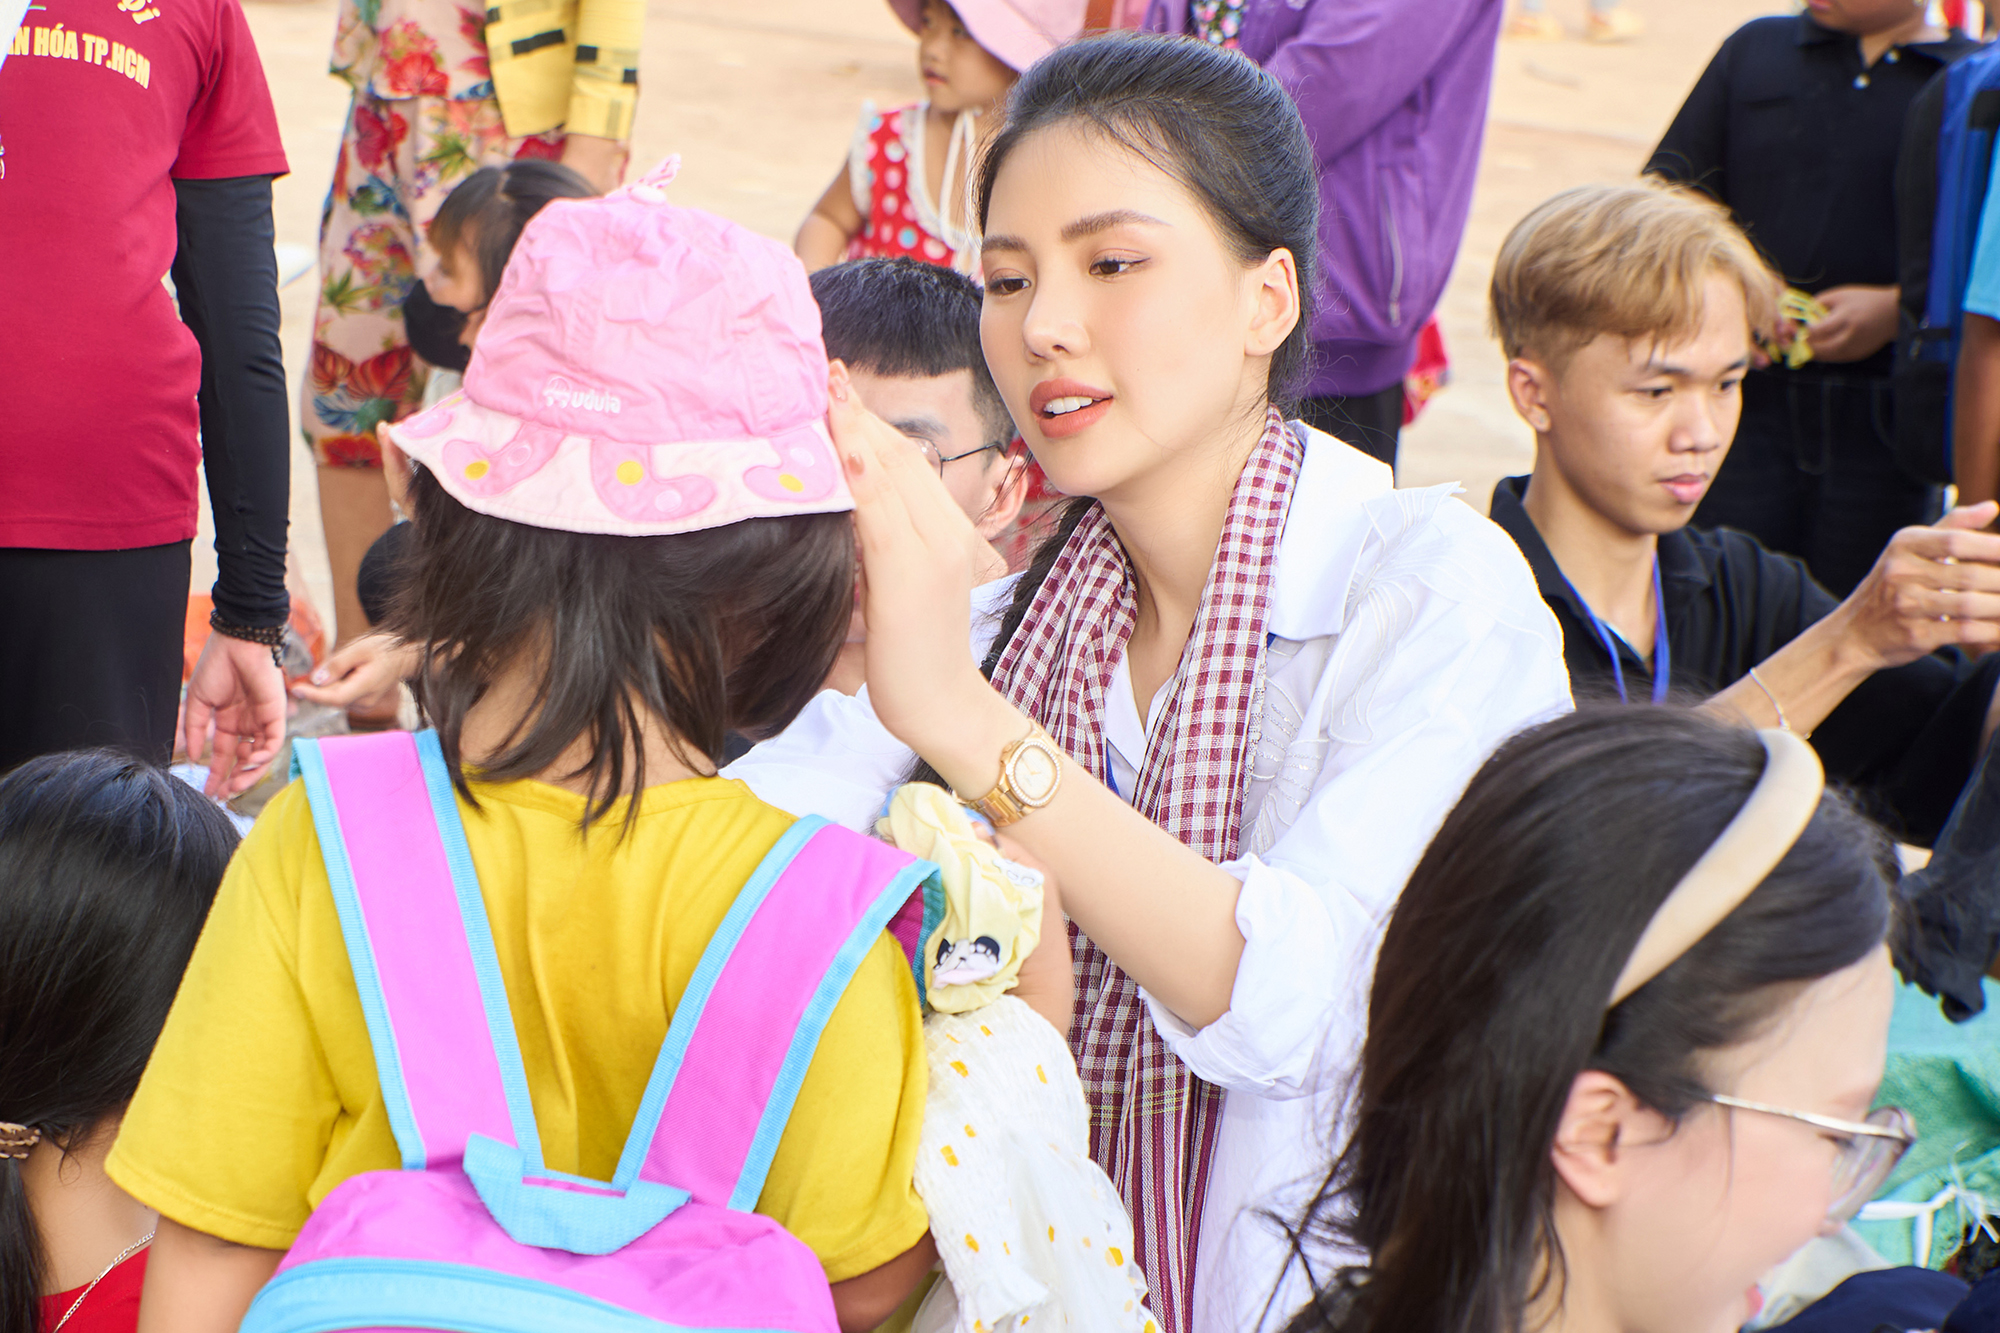 Bên cạnh đó, người đẹp gốc Hà Nội cũng hăng hái trong việc trao quà và vui chơi cùng các em nhỏ. Đối với cô, đây là chuyến đi ý nghĩa và để lại nhiều kỷ niệm đẹp